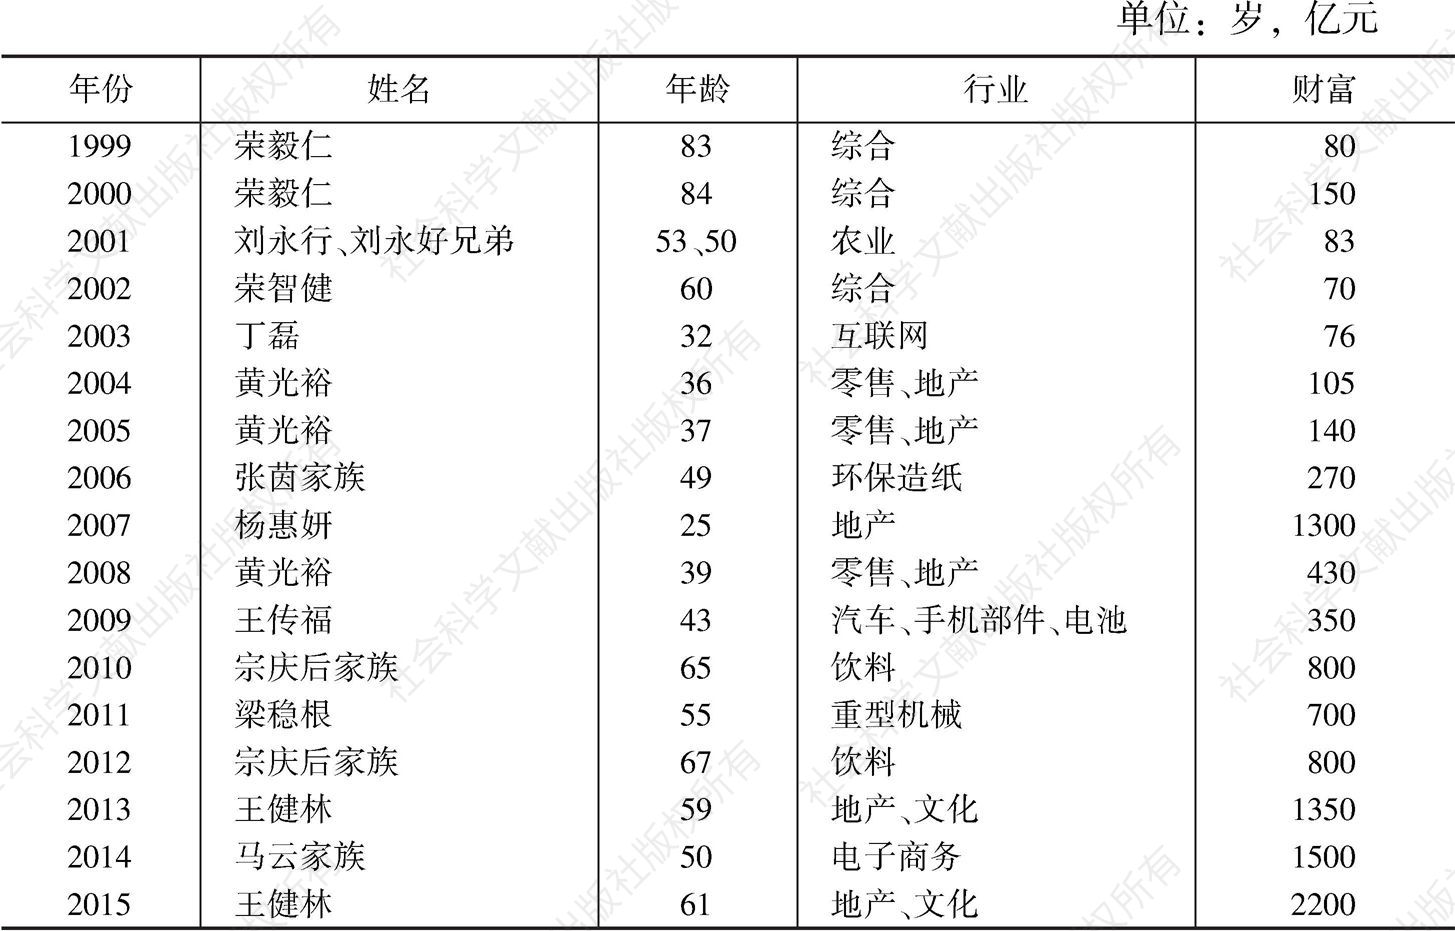 表1-7 1999～2015年胡润富豪榜历年首富情况统计